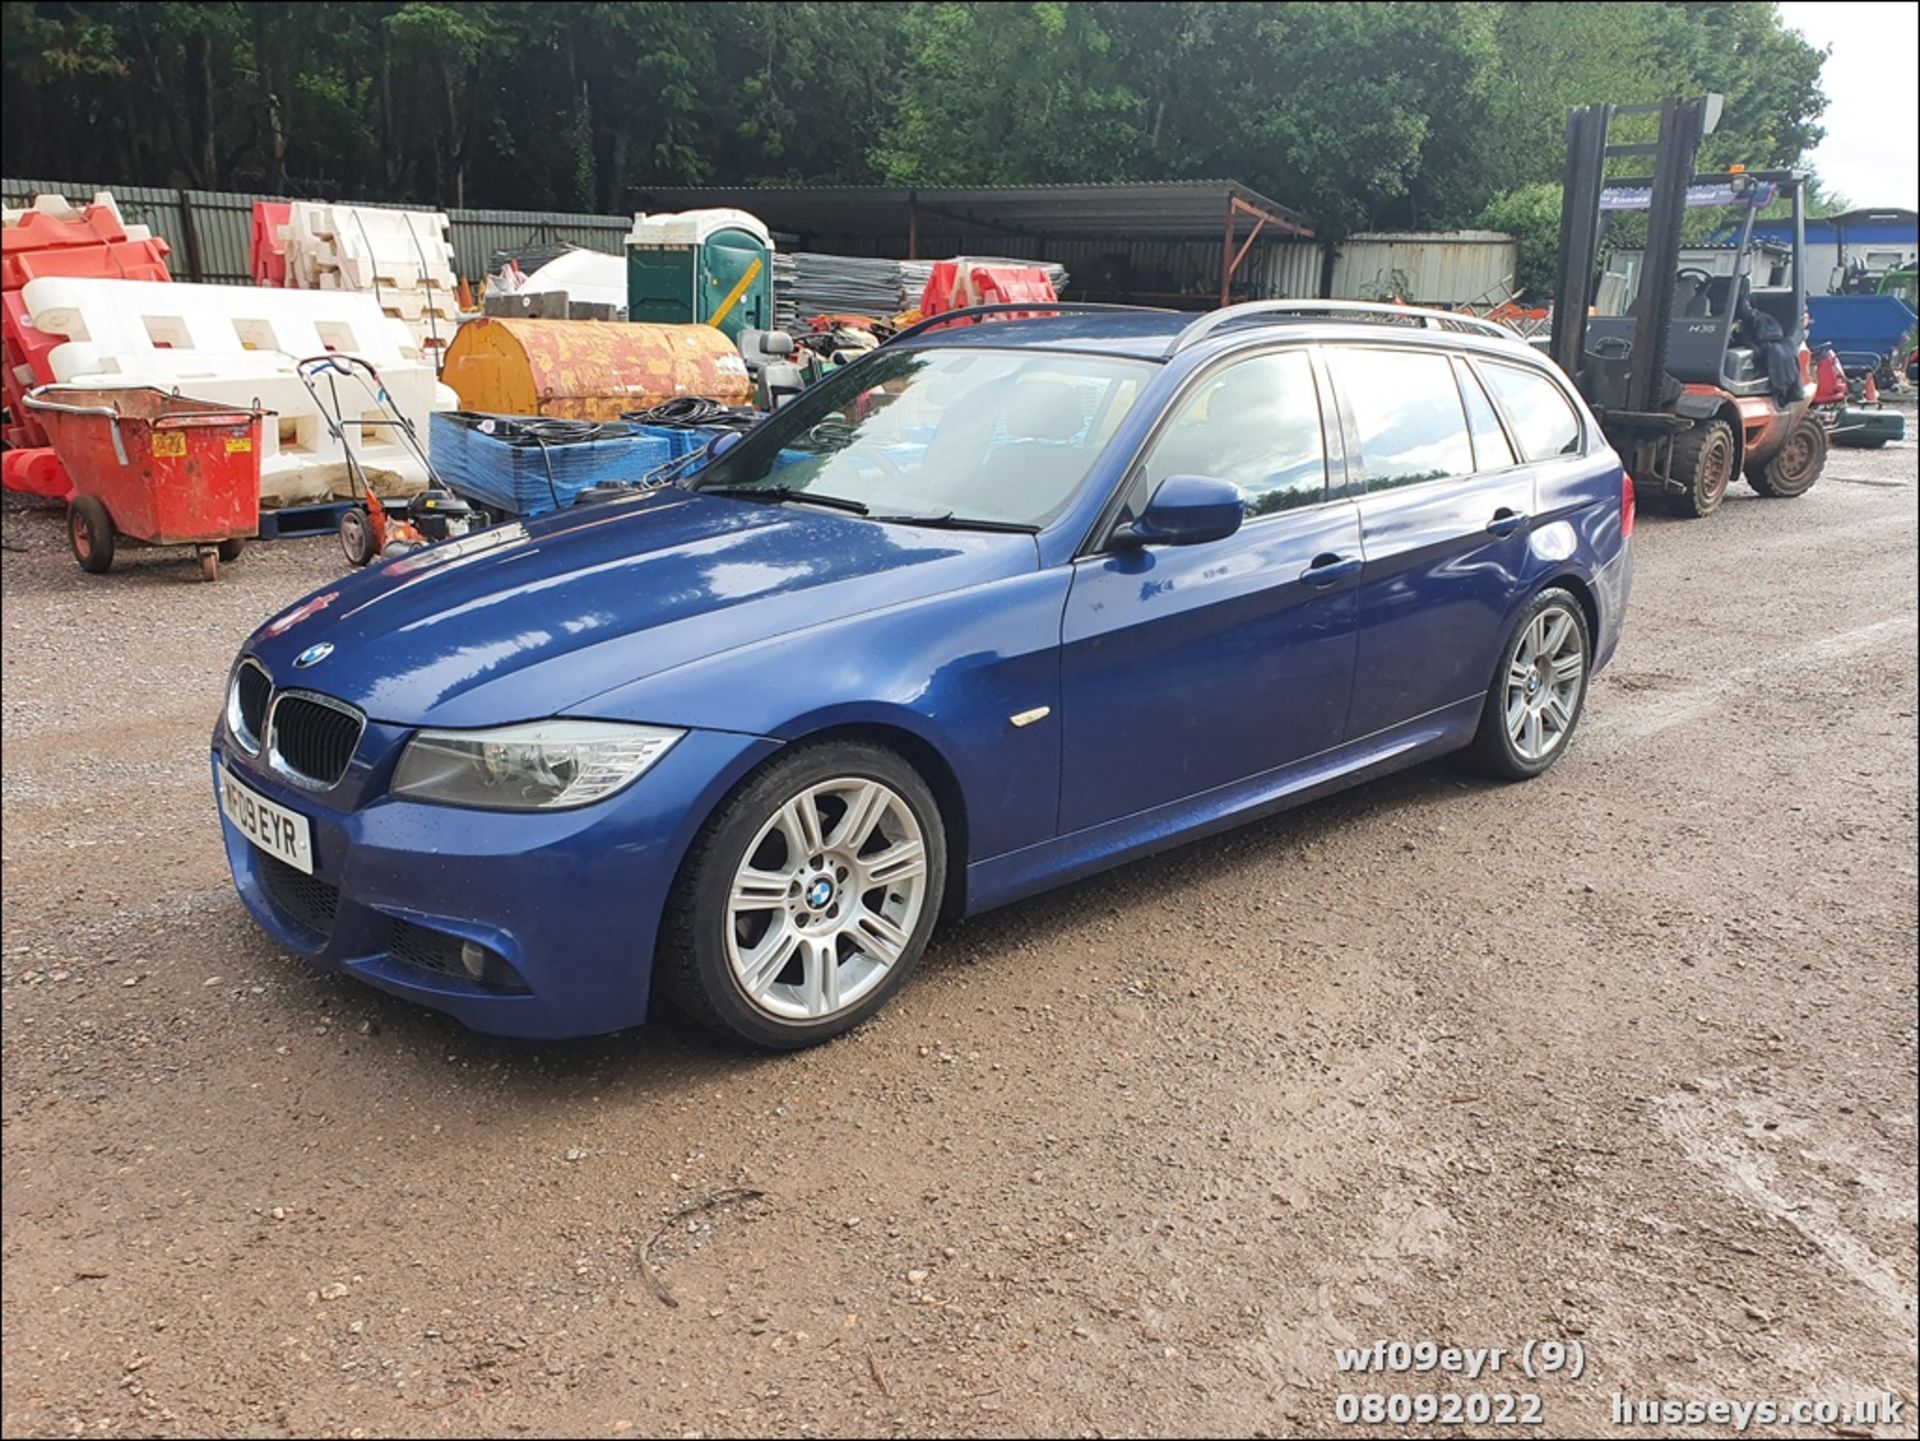 09/09 BMW 318I M SPORT TOURING - 1995cc 5dr Estate (Blue, 122k) - Image 9 of 47